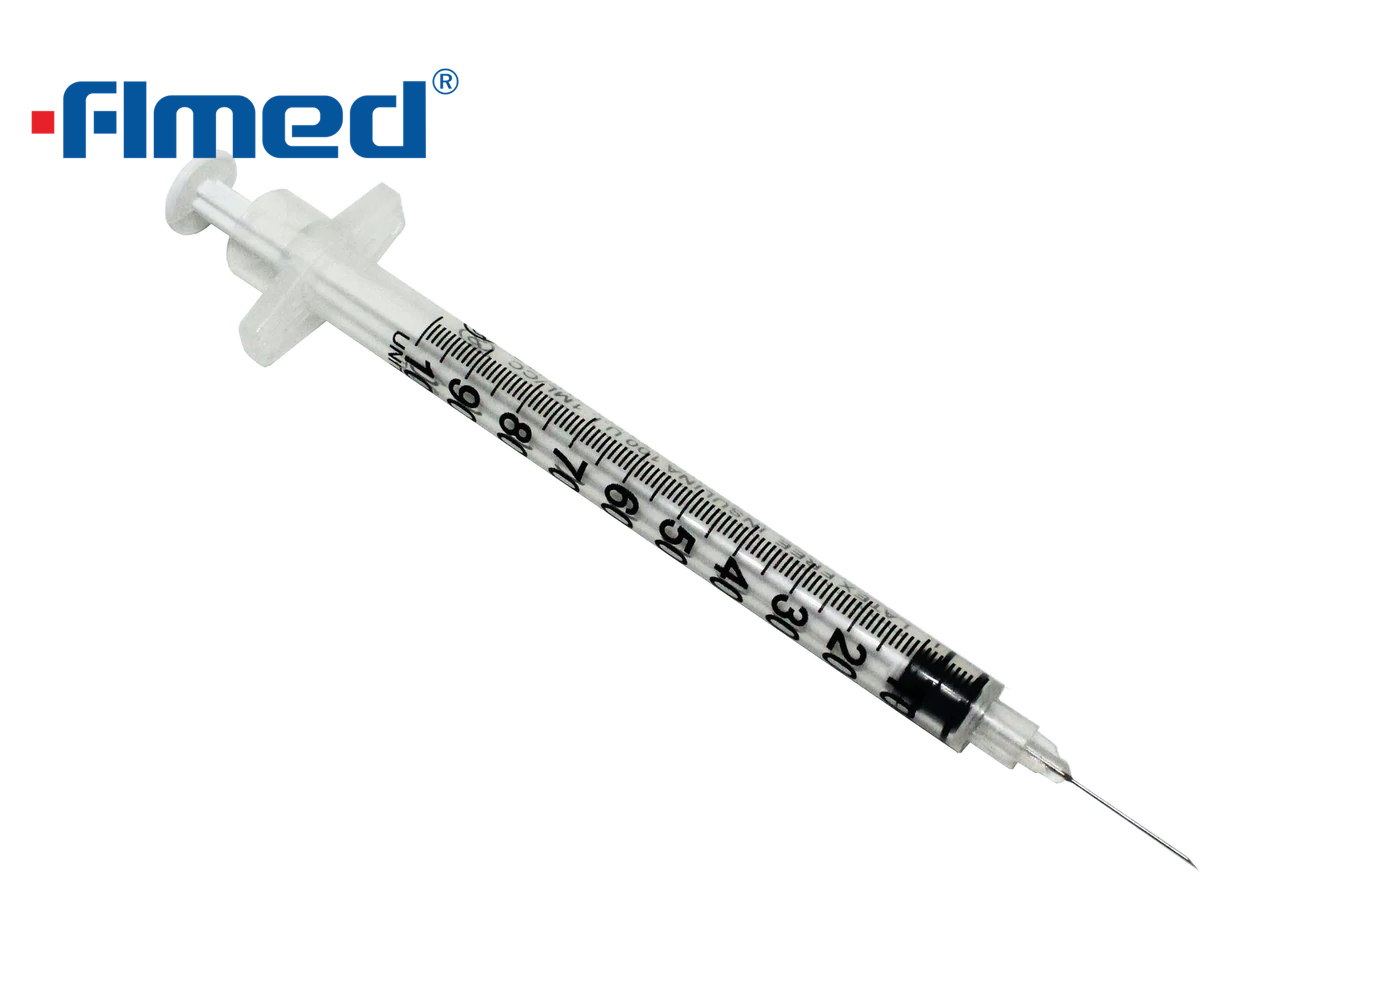  Comprendre les seringues à l'insuline: tailles et utilisations